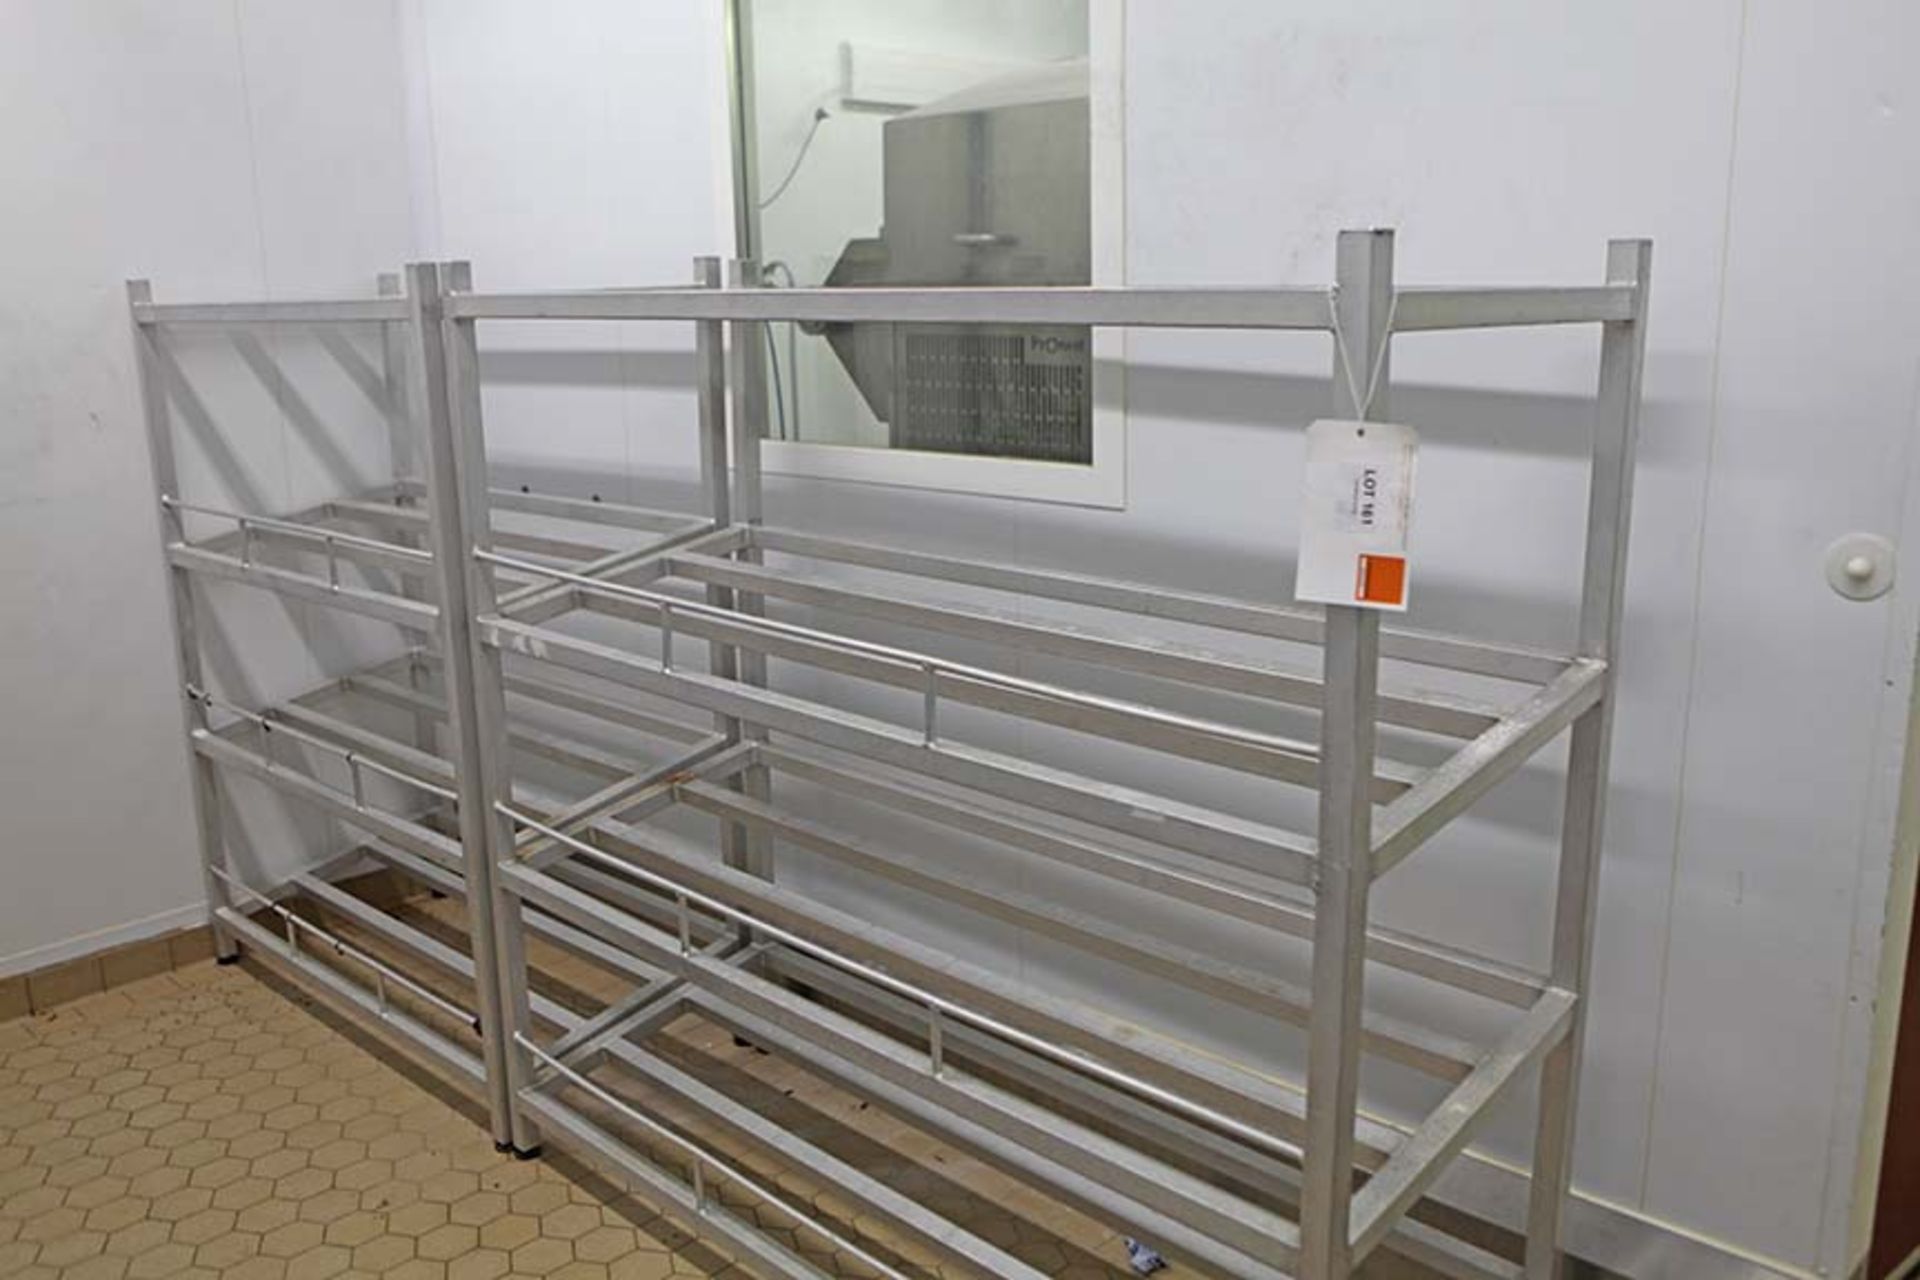 2 Tray racks 1700 x 620 & 1300 x 620 both 1600 mm tall